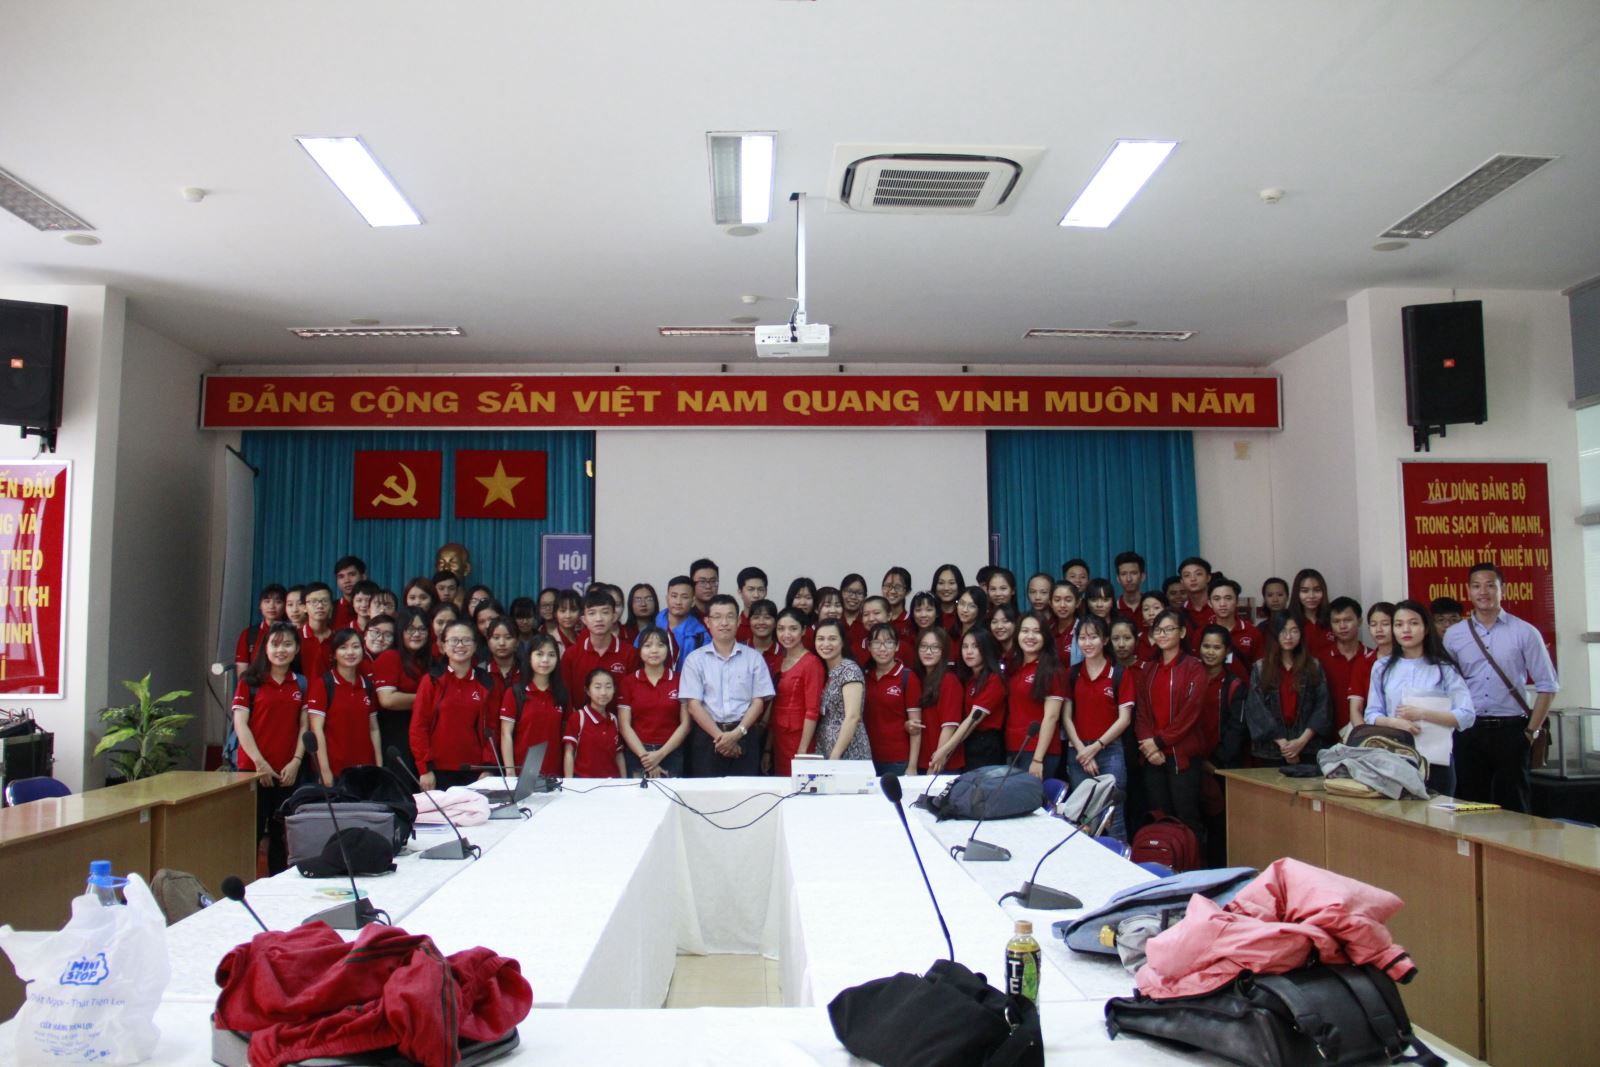 Lớp Đô thị học (Trường ĐH KHXH&NV, ĐHQG-HCM) hoàn thành Môn học Kiến tập 1 tại TP. HCM ngày 11/04/2018